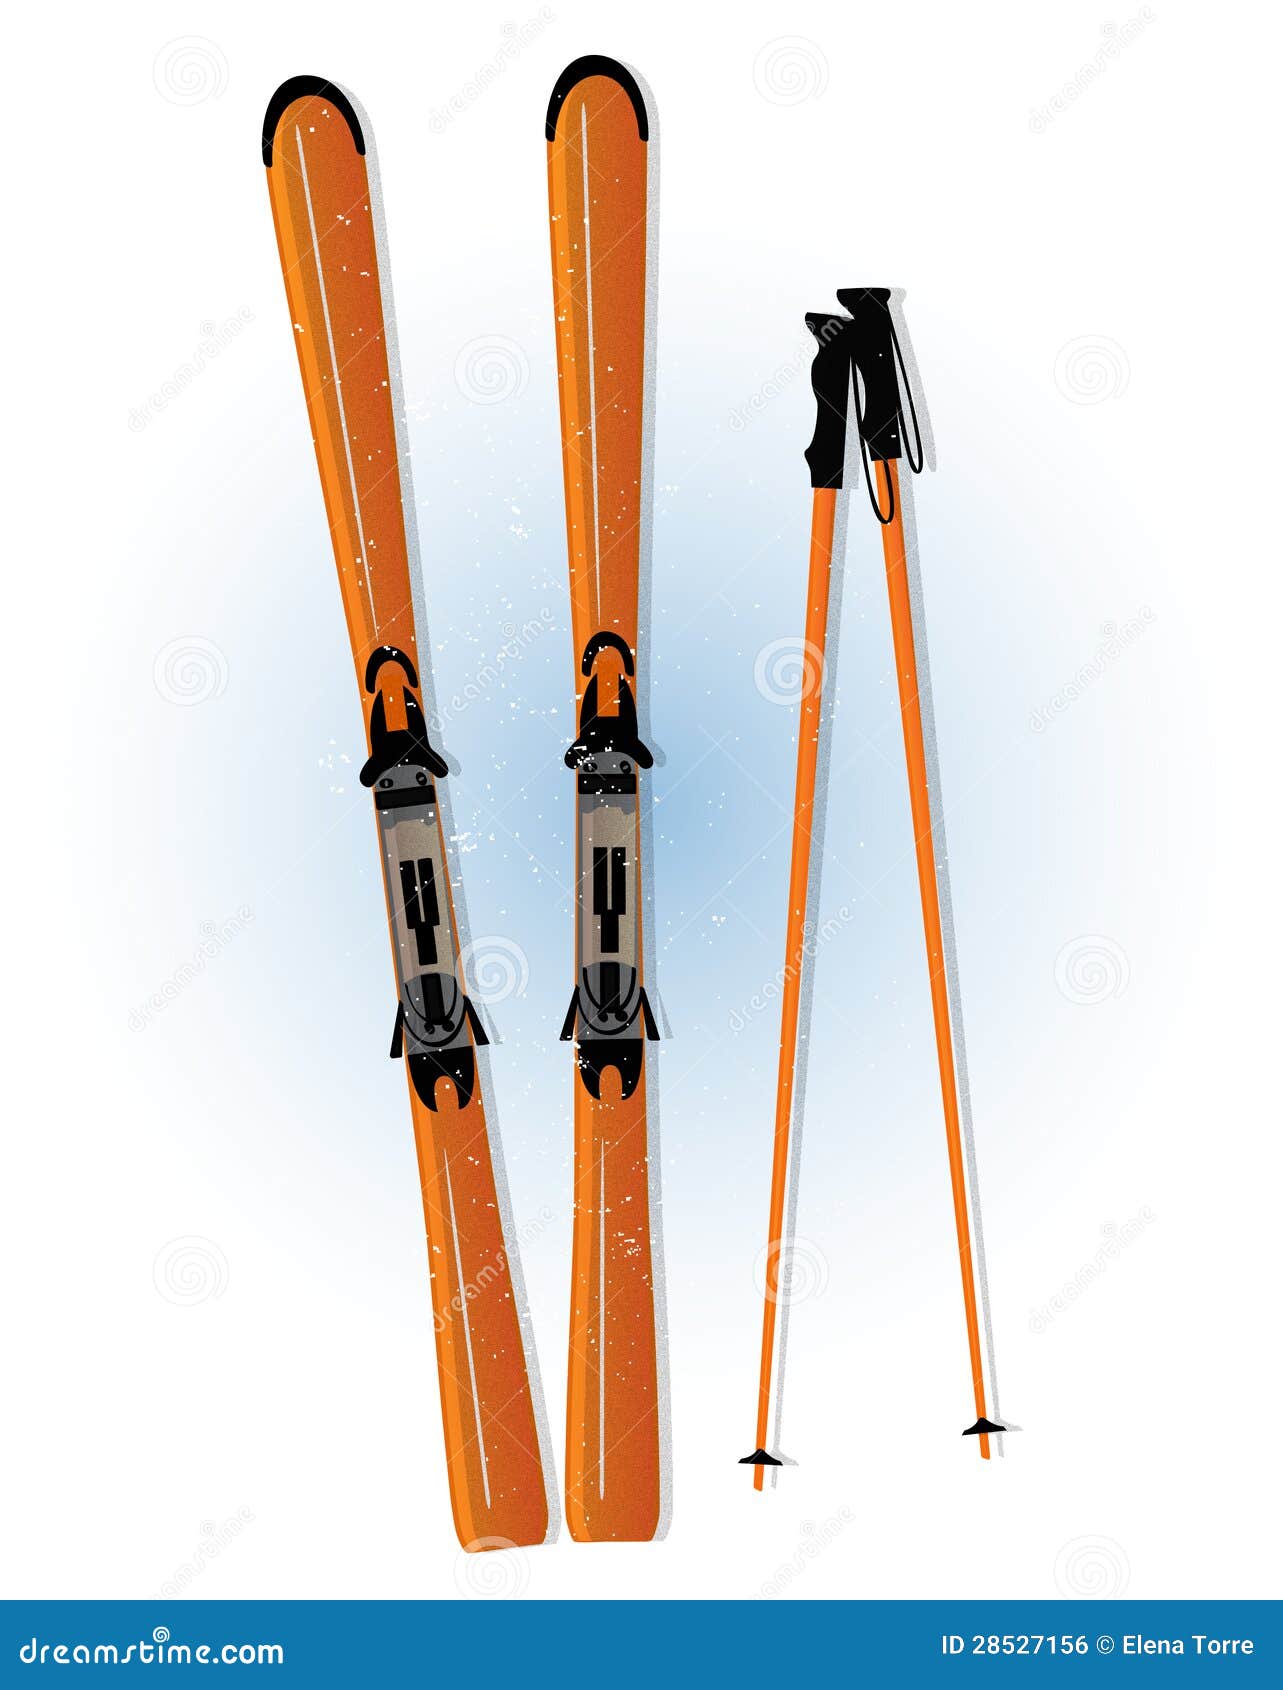 ski and ski sticks 